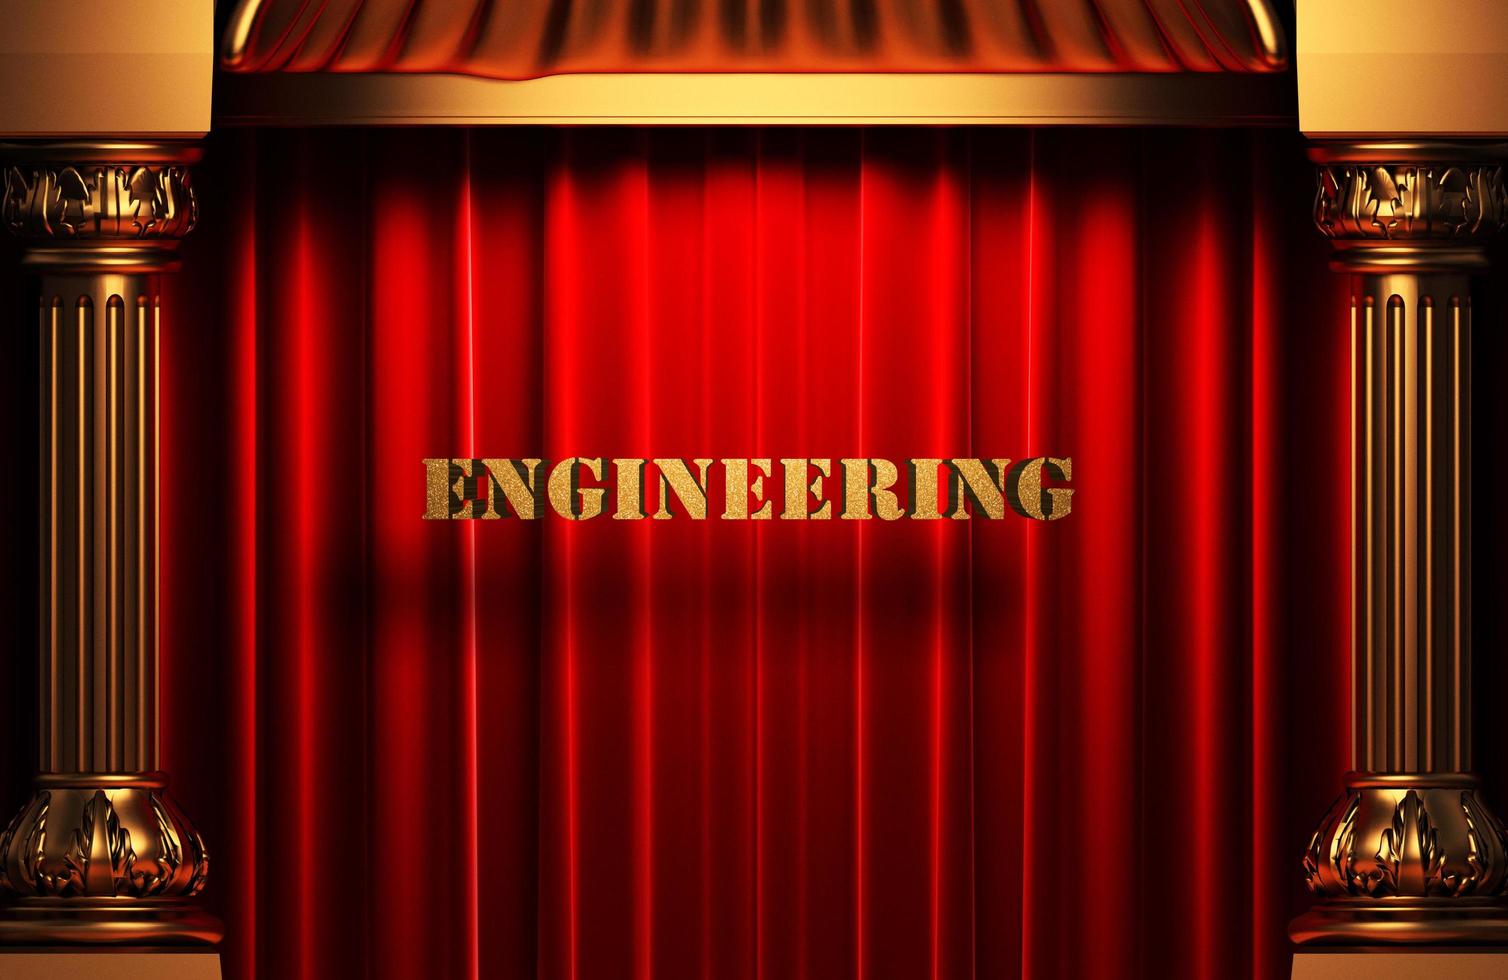 engineering gouden woord op rood gordijn foto